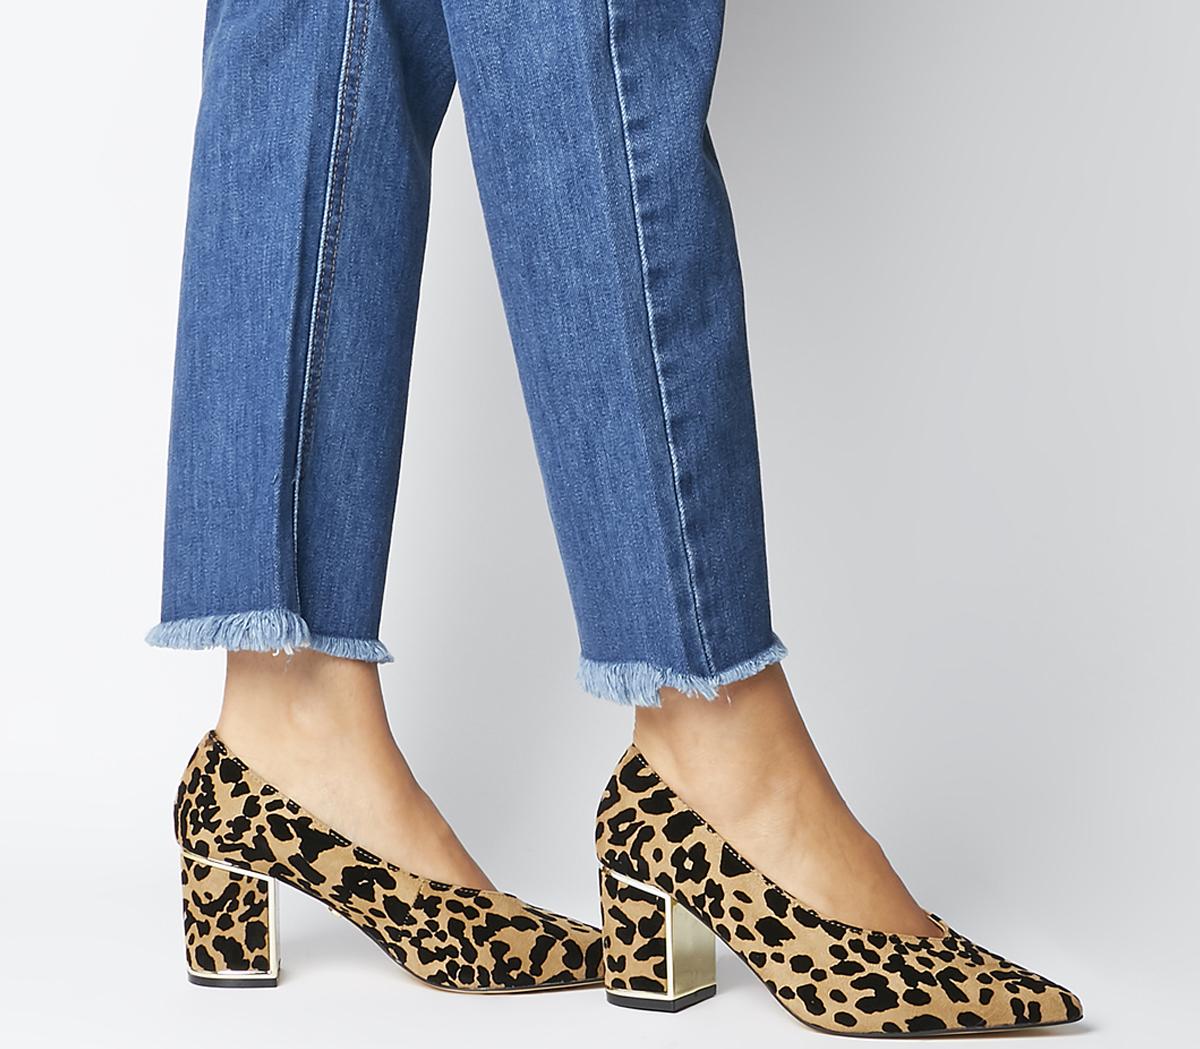 leopard pumps block heel